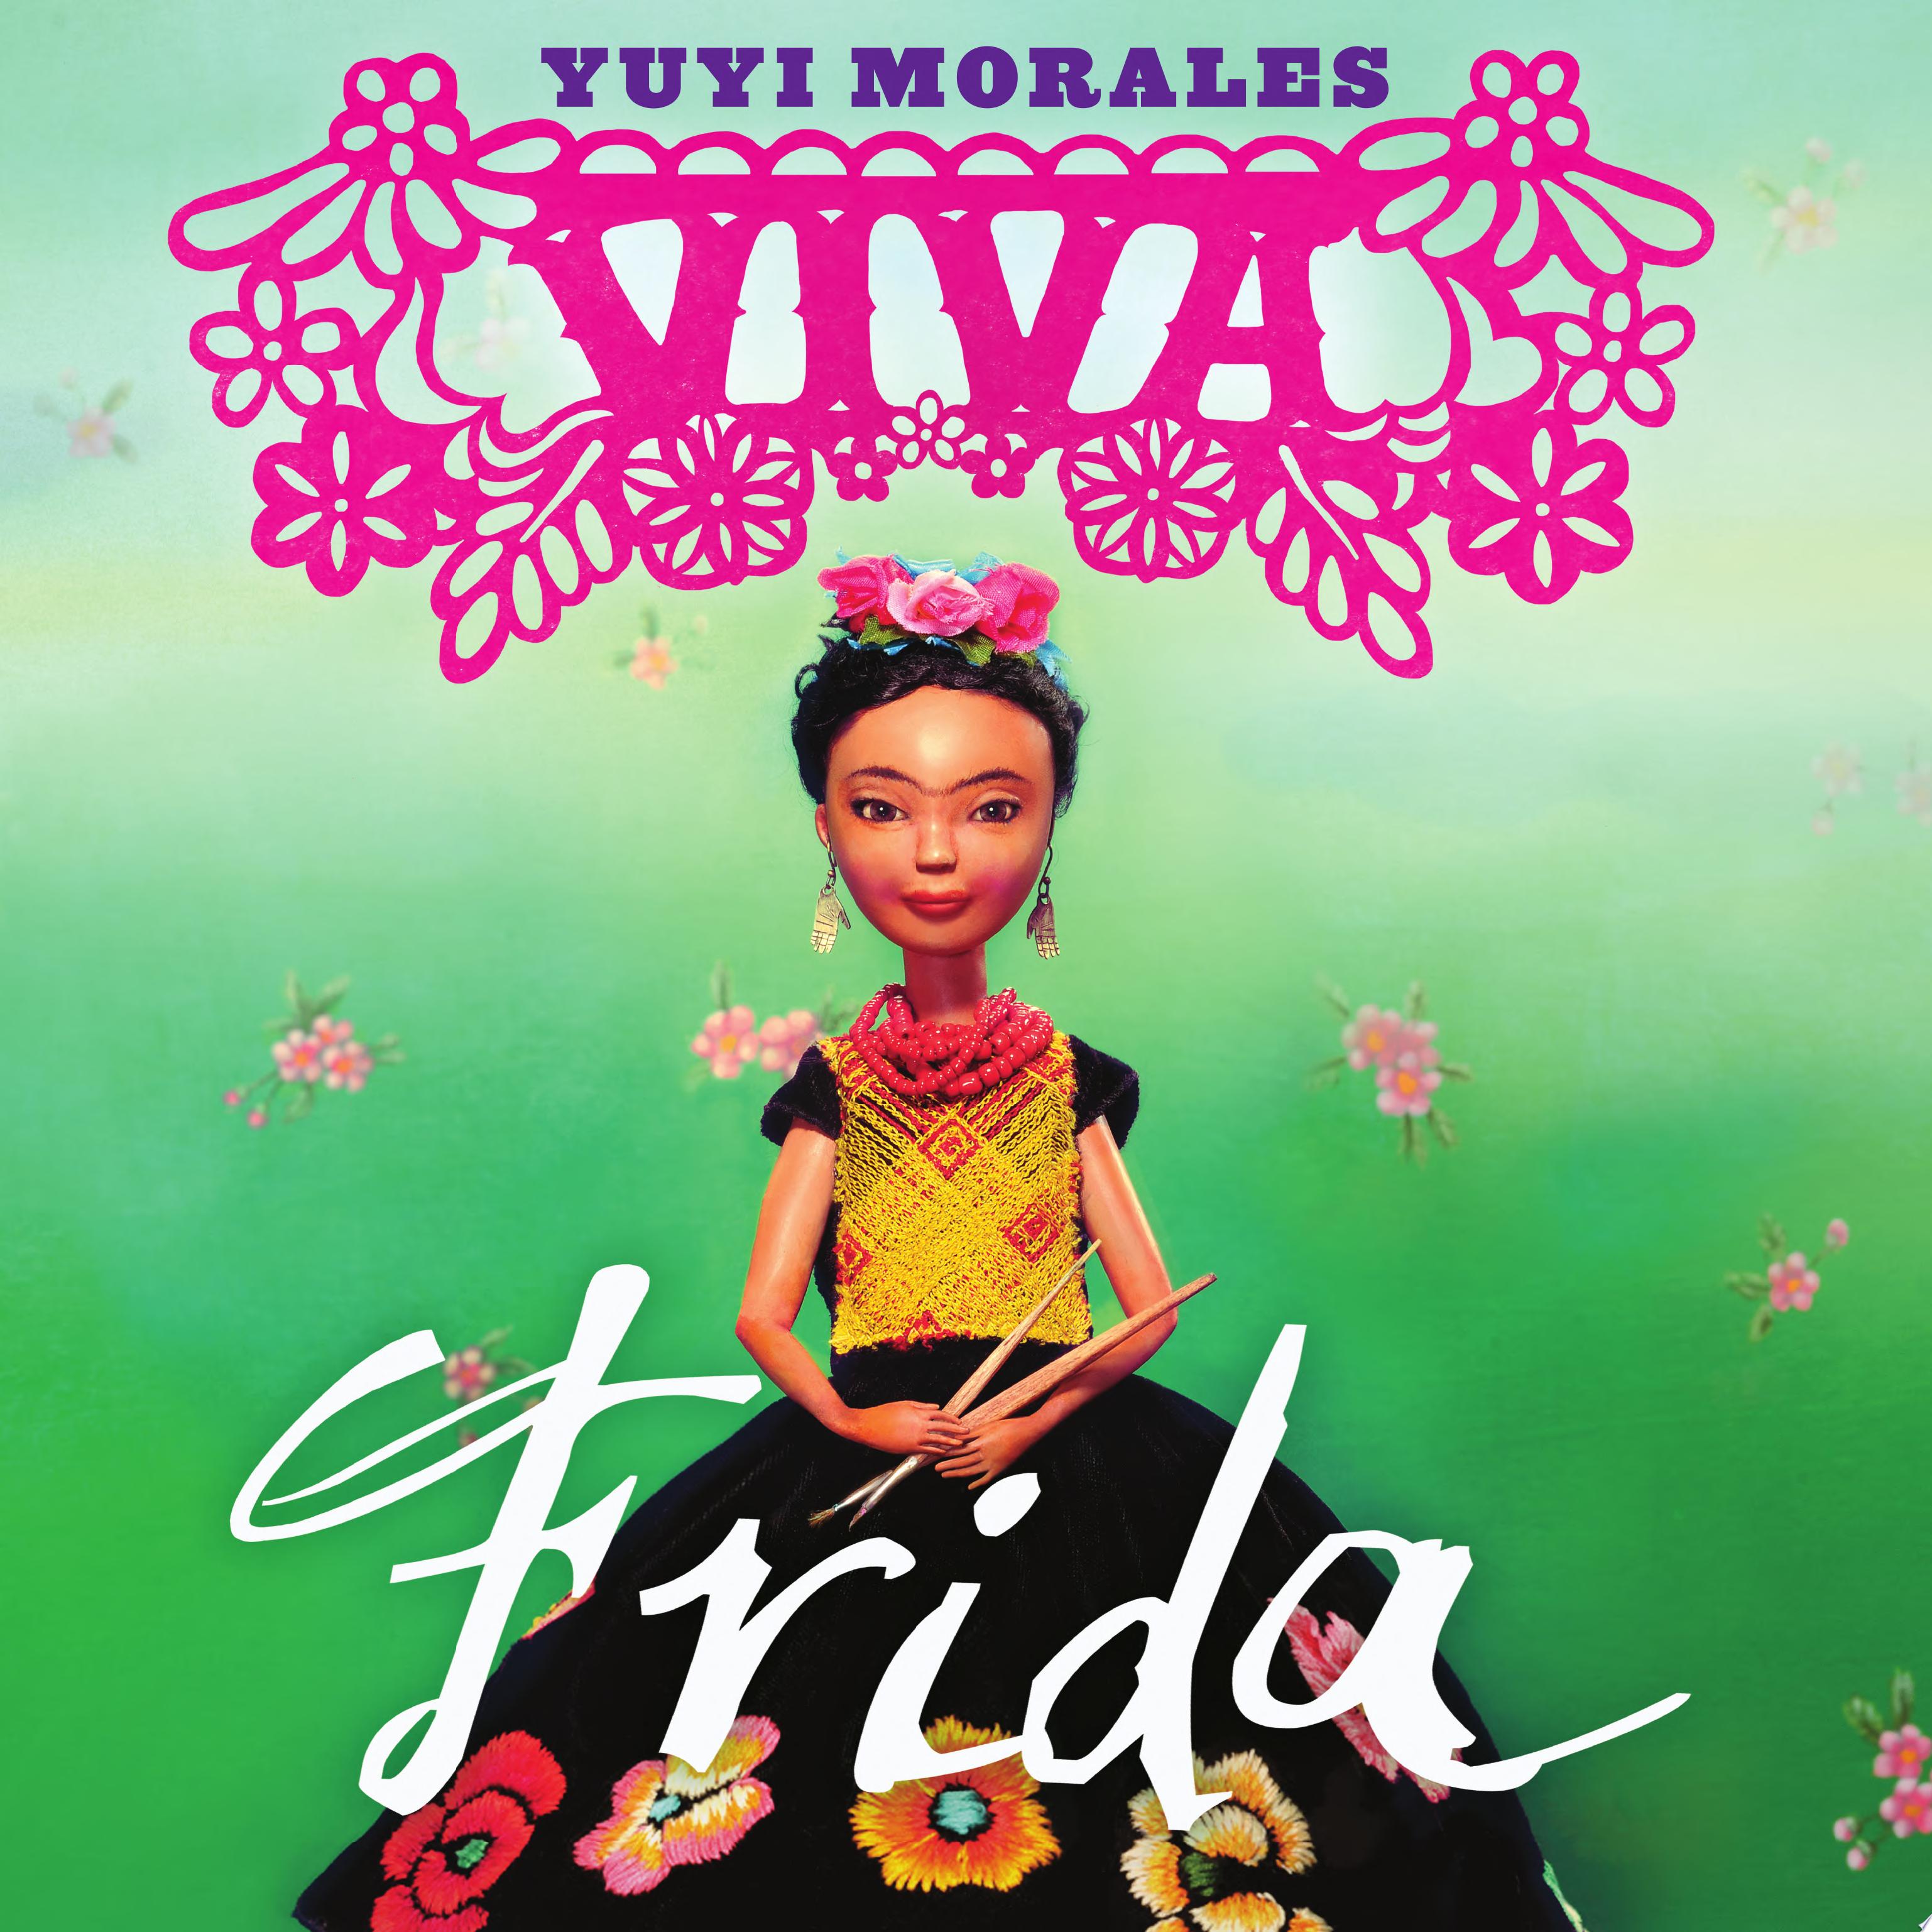 Image for "Viva Frida"